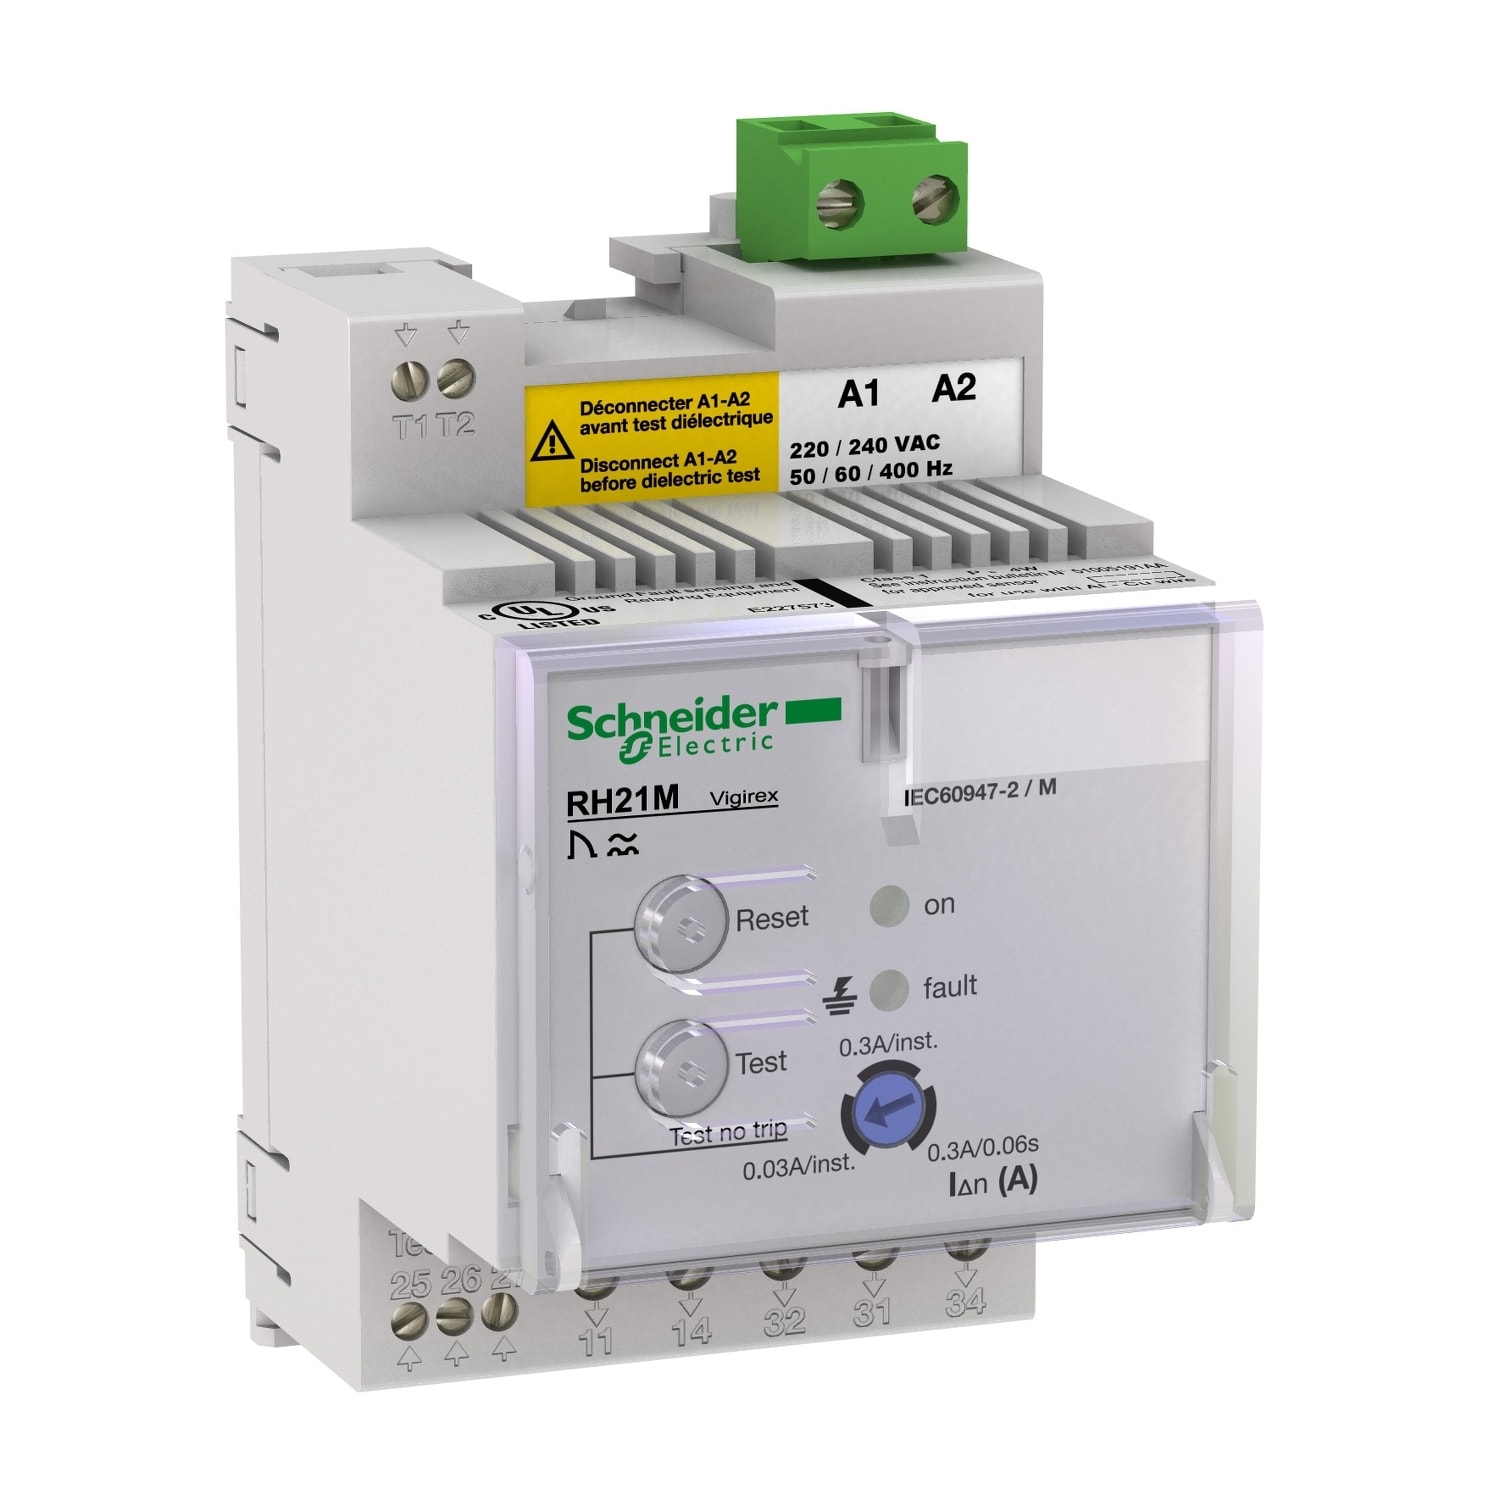 Schneider Electric - Vigirex RH21M 380-415VAC sensibilite 0,03A-0,3A instantane